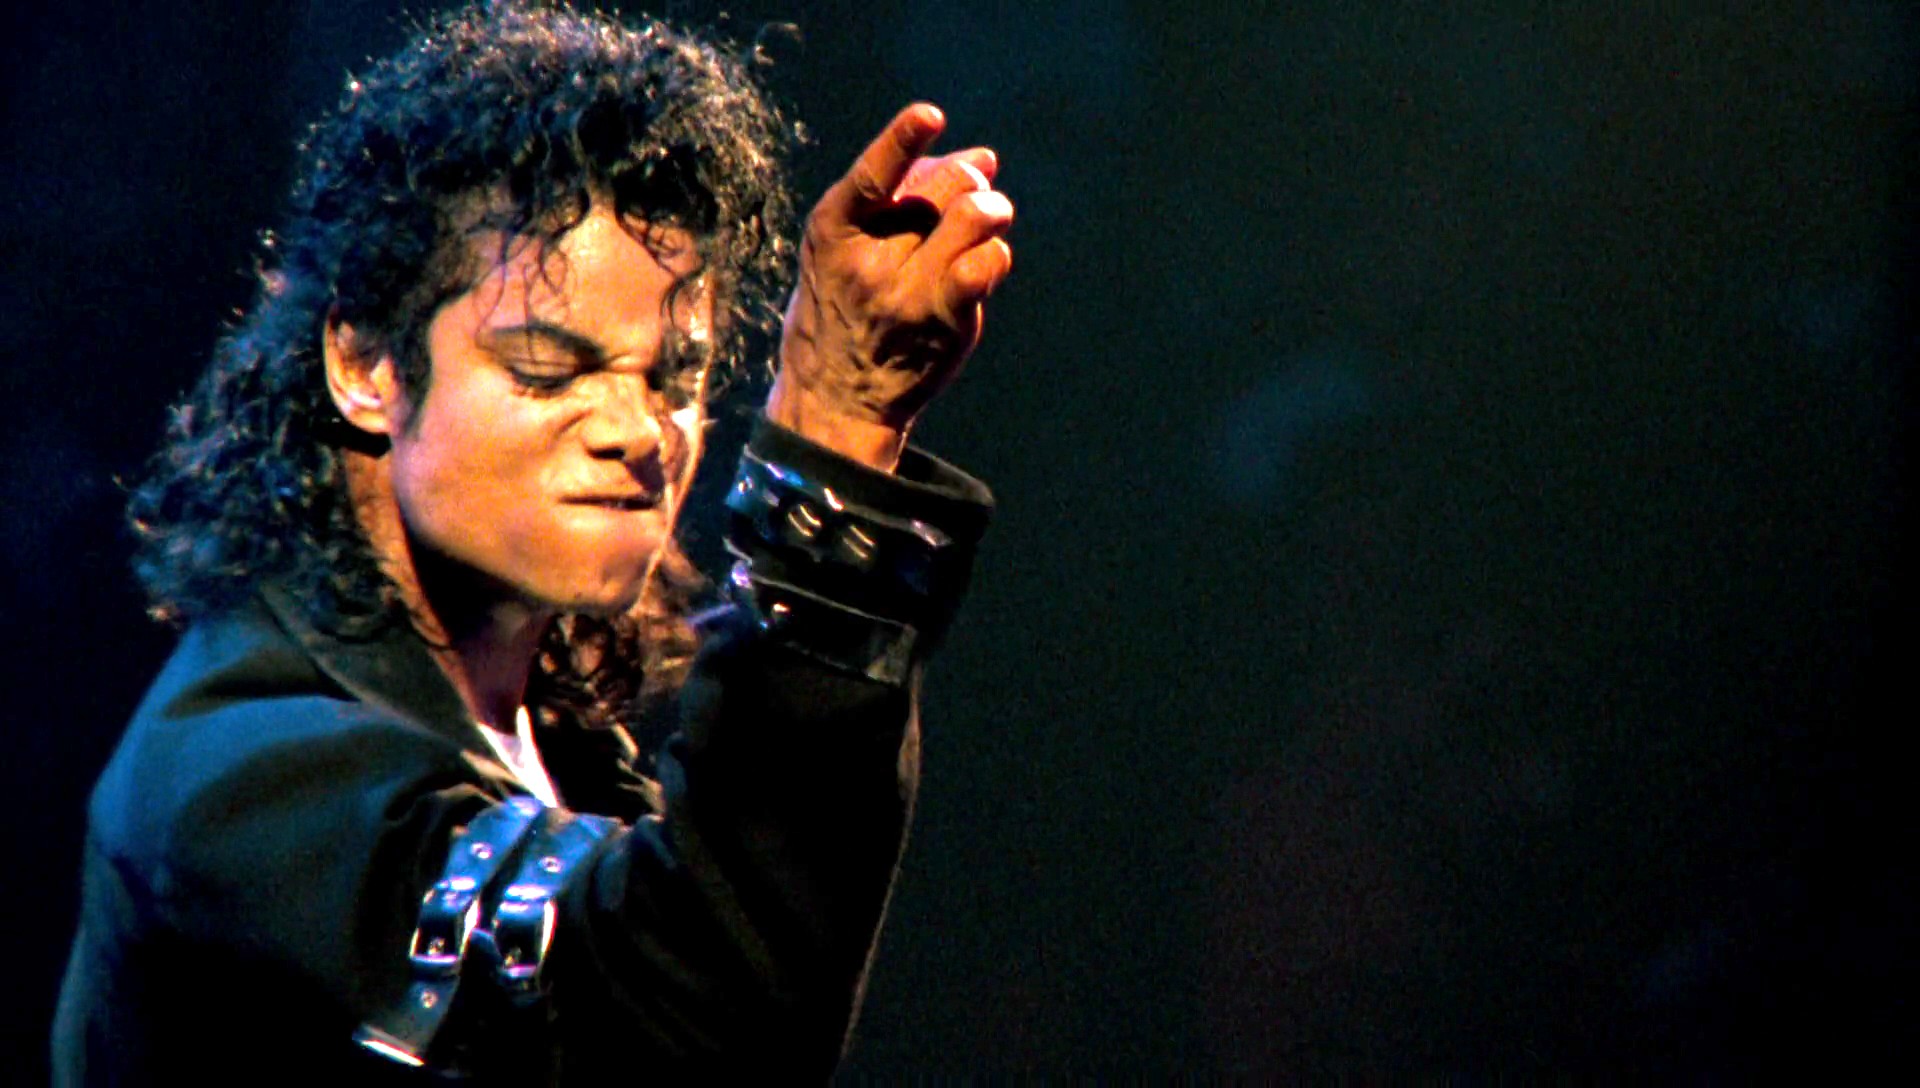 Michael Jackson without sleep